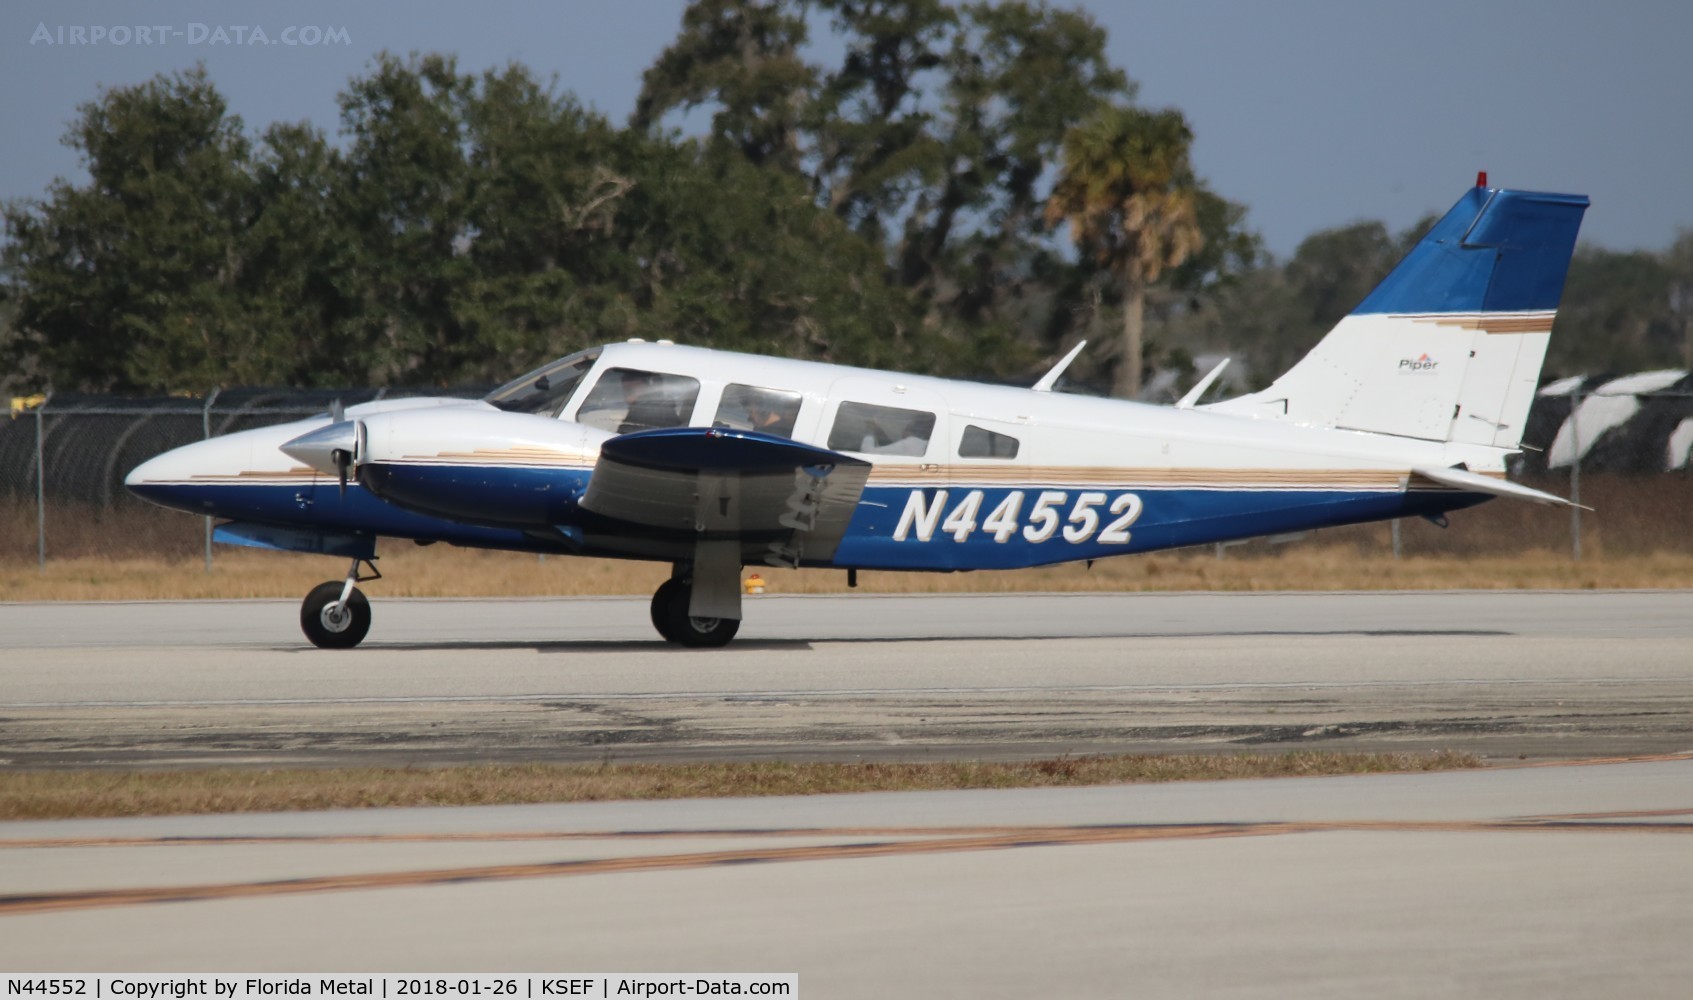 N44552, 1974 Piper PA-34-200T C/N 34-7570003, PA-34